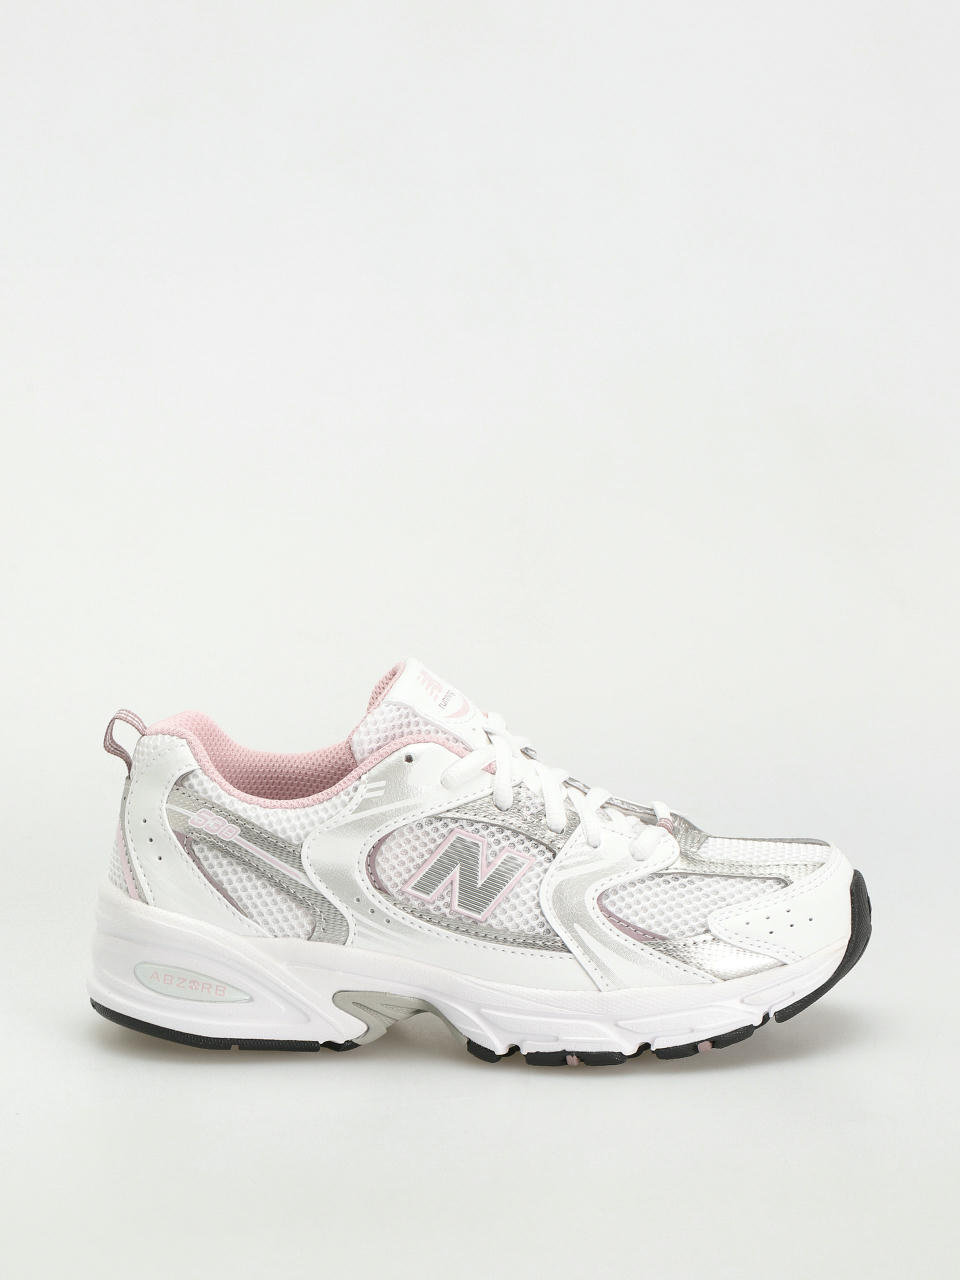 New Balance 530 JR Schuhe (white silver pink)